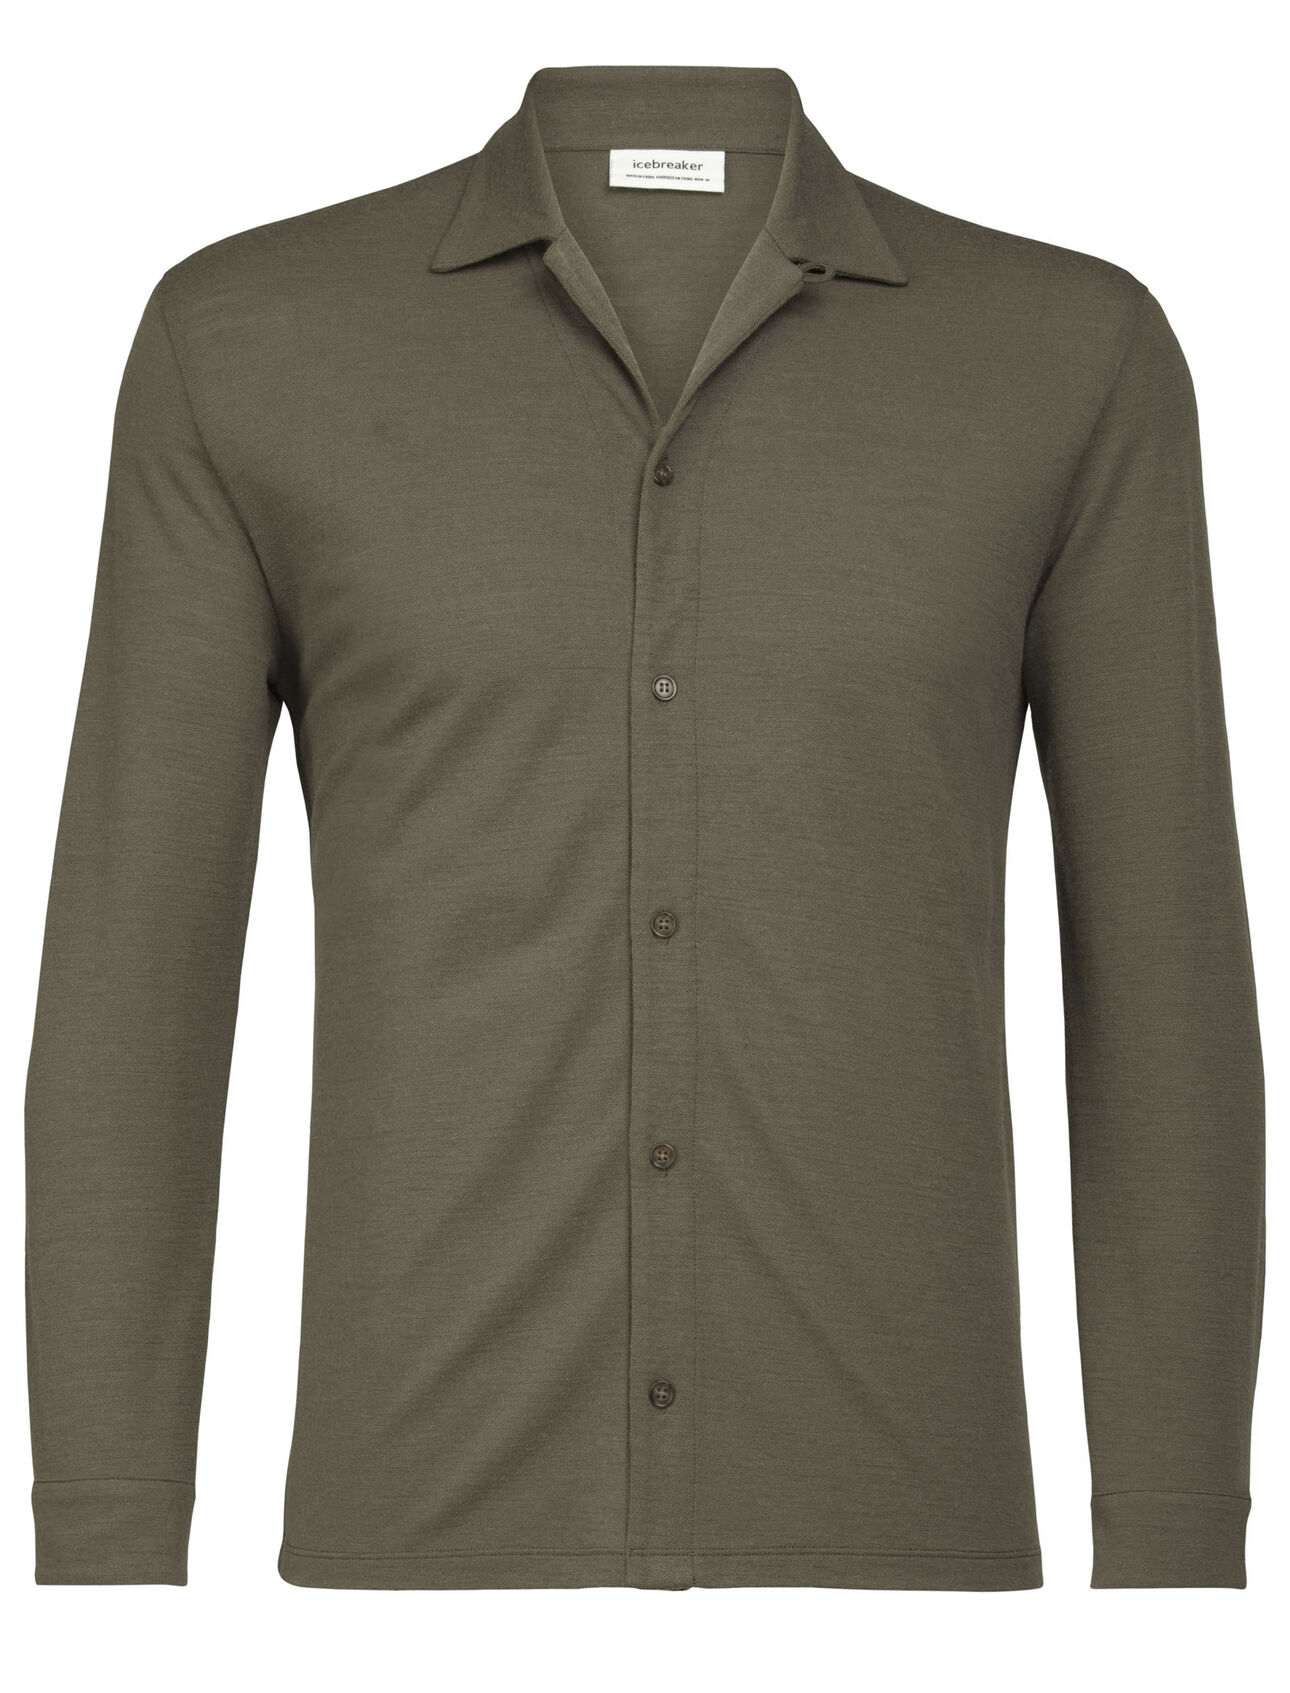 Herr Merino Pique långärmad skjorta Merino Pique långärmad skjorta är en lättviktig topp i 100% merino med en klassisk siluett med knappstängning framtill. Den är pålitlig, snygg och erbjuder gott om vardagskomfort. 